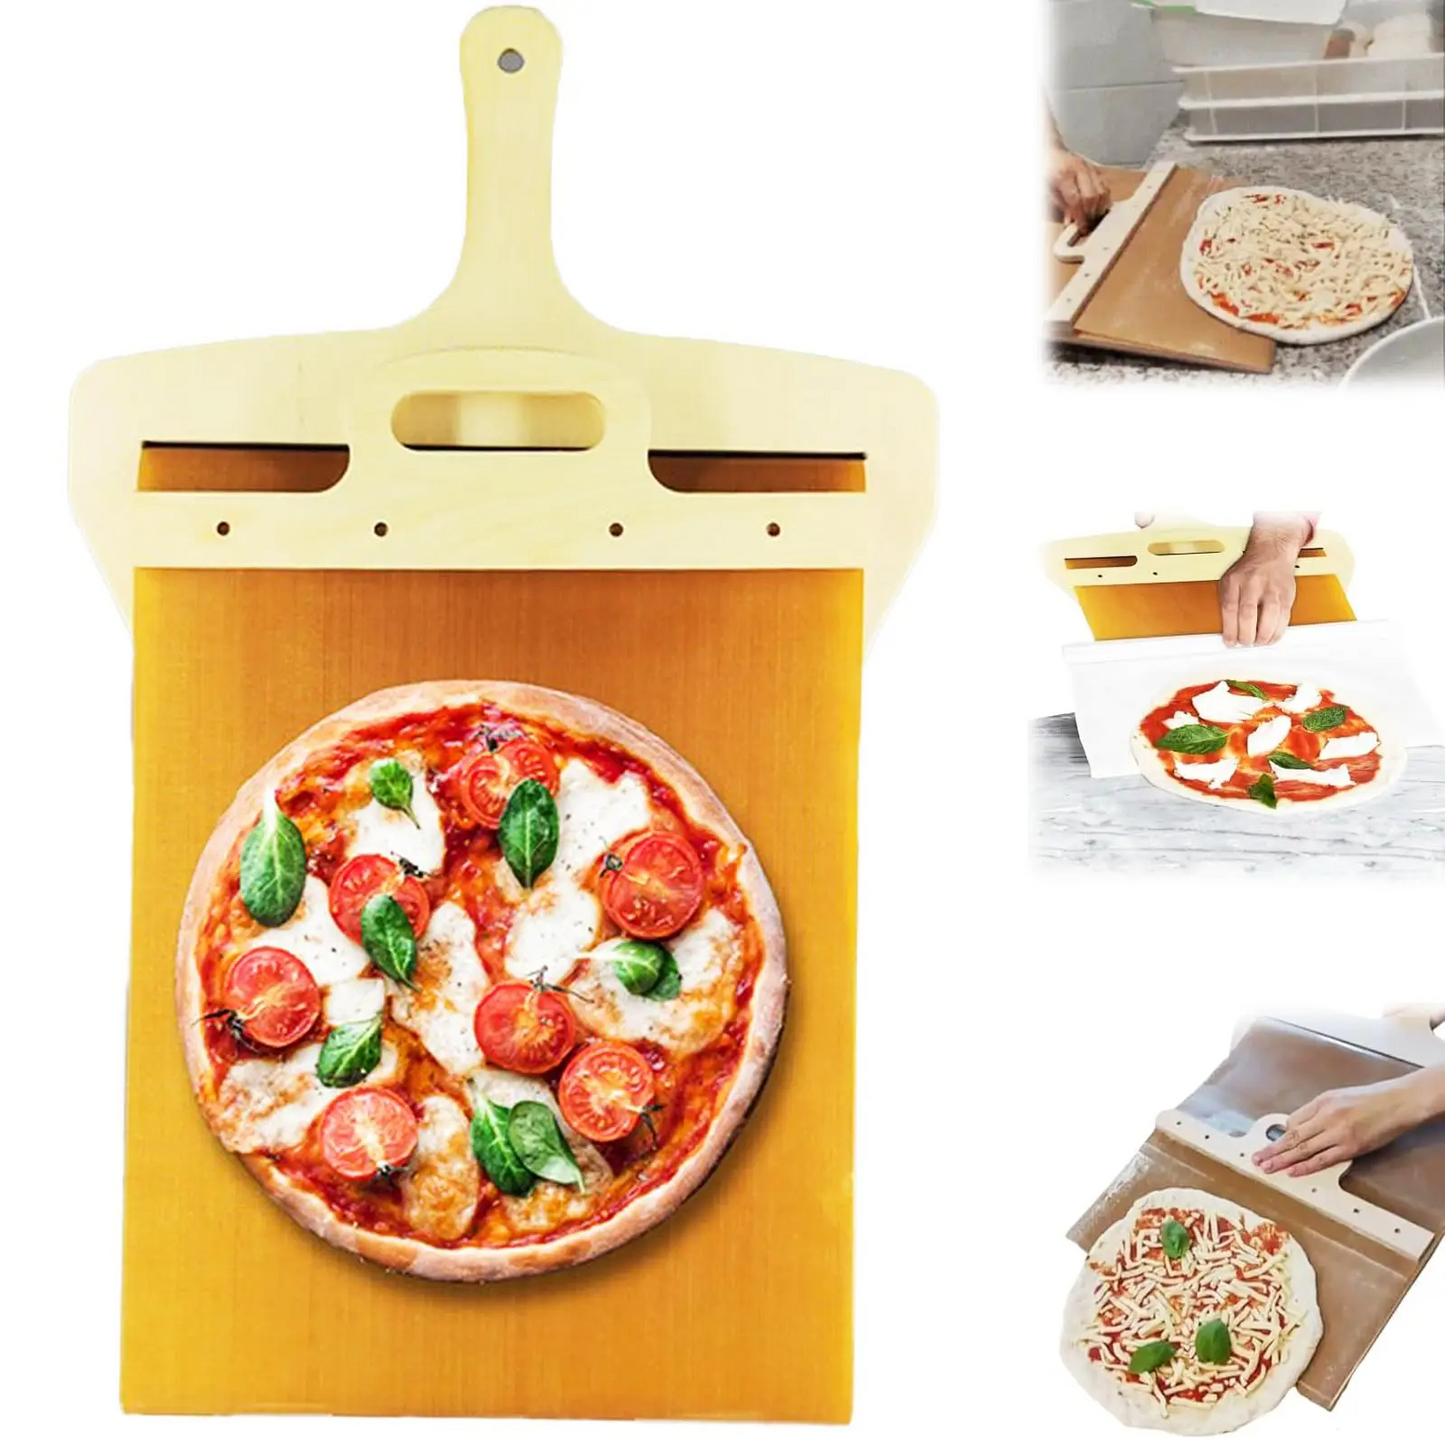 Pizzaspade: Perfekt til pizzaer, kager og meget andet!